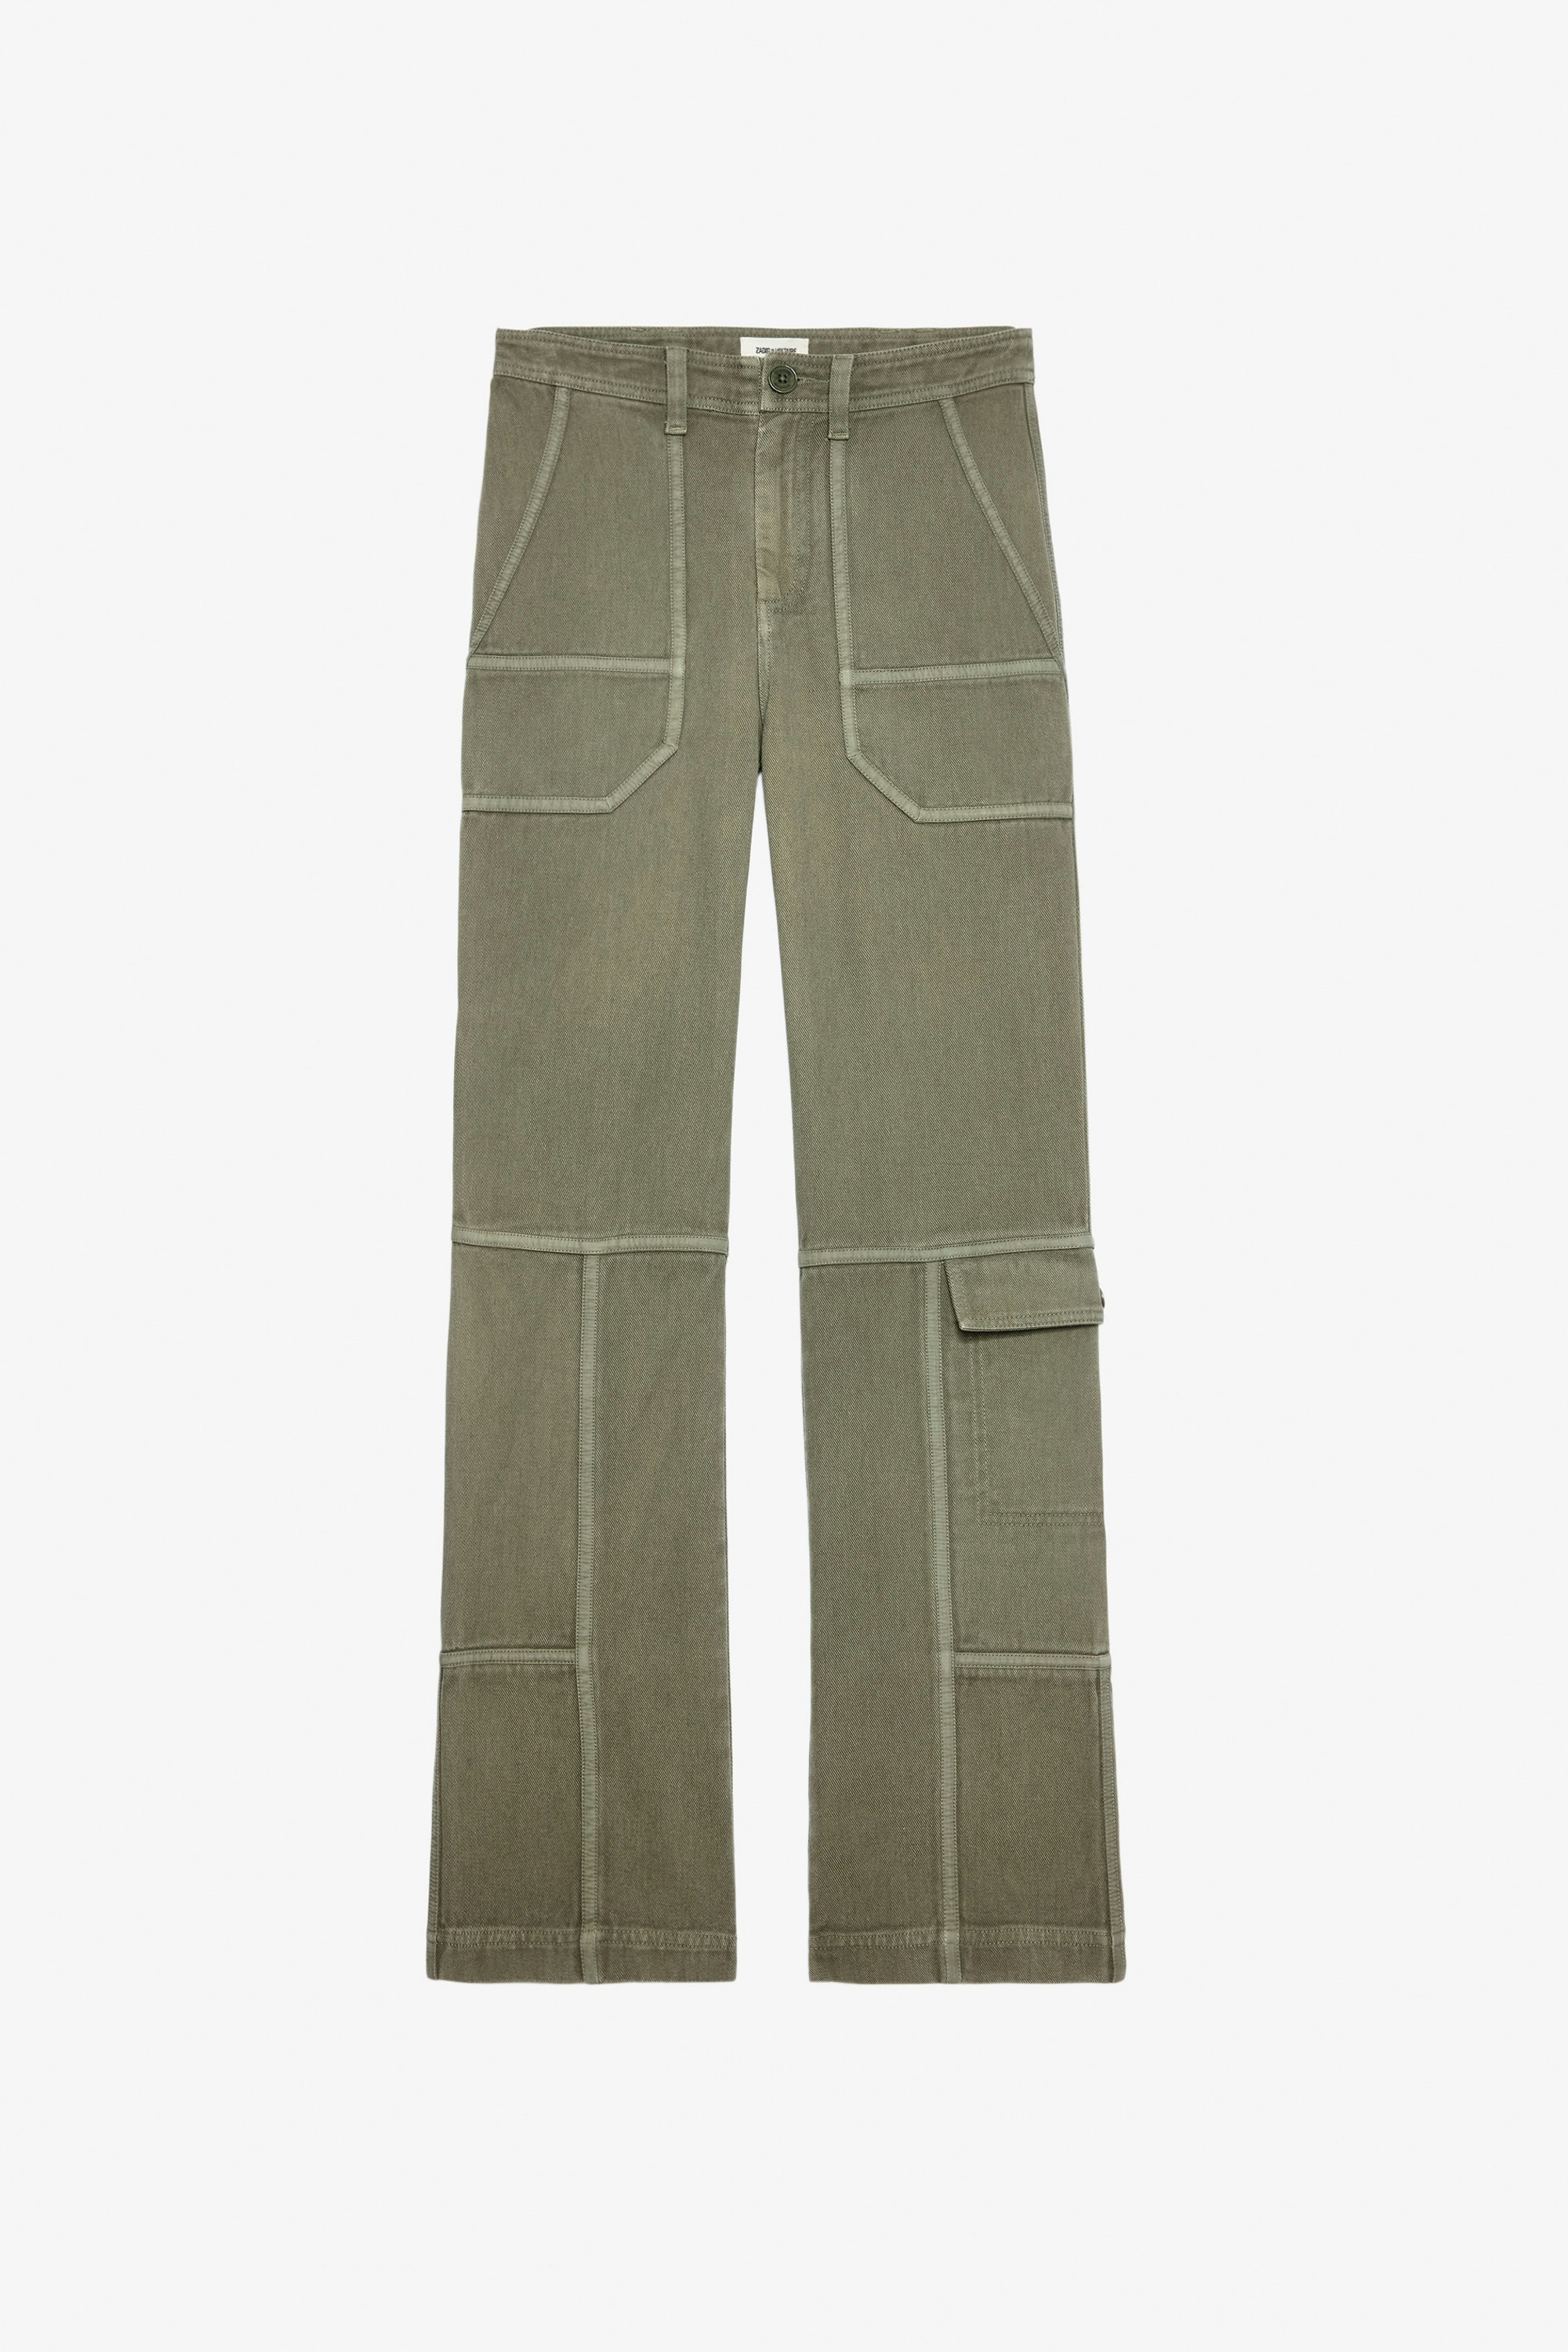 Hose Pepper - Damen-Hose aus Baumwolltwill in Khaki mit Kontrastdetails